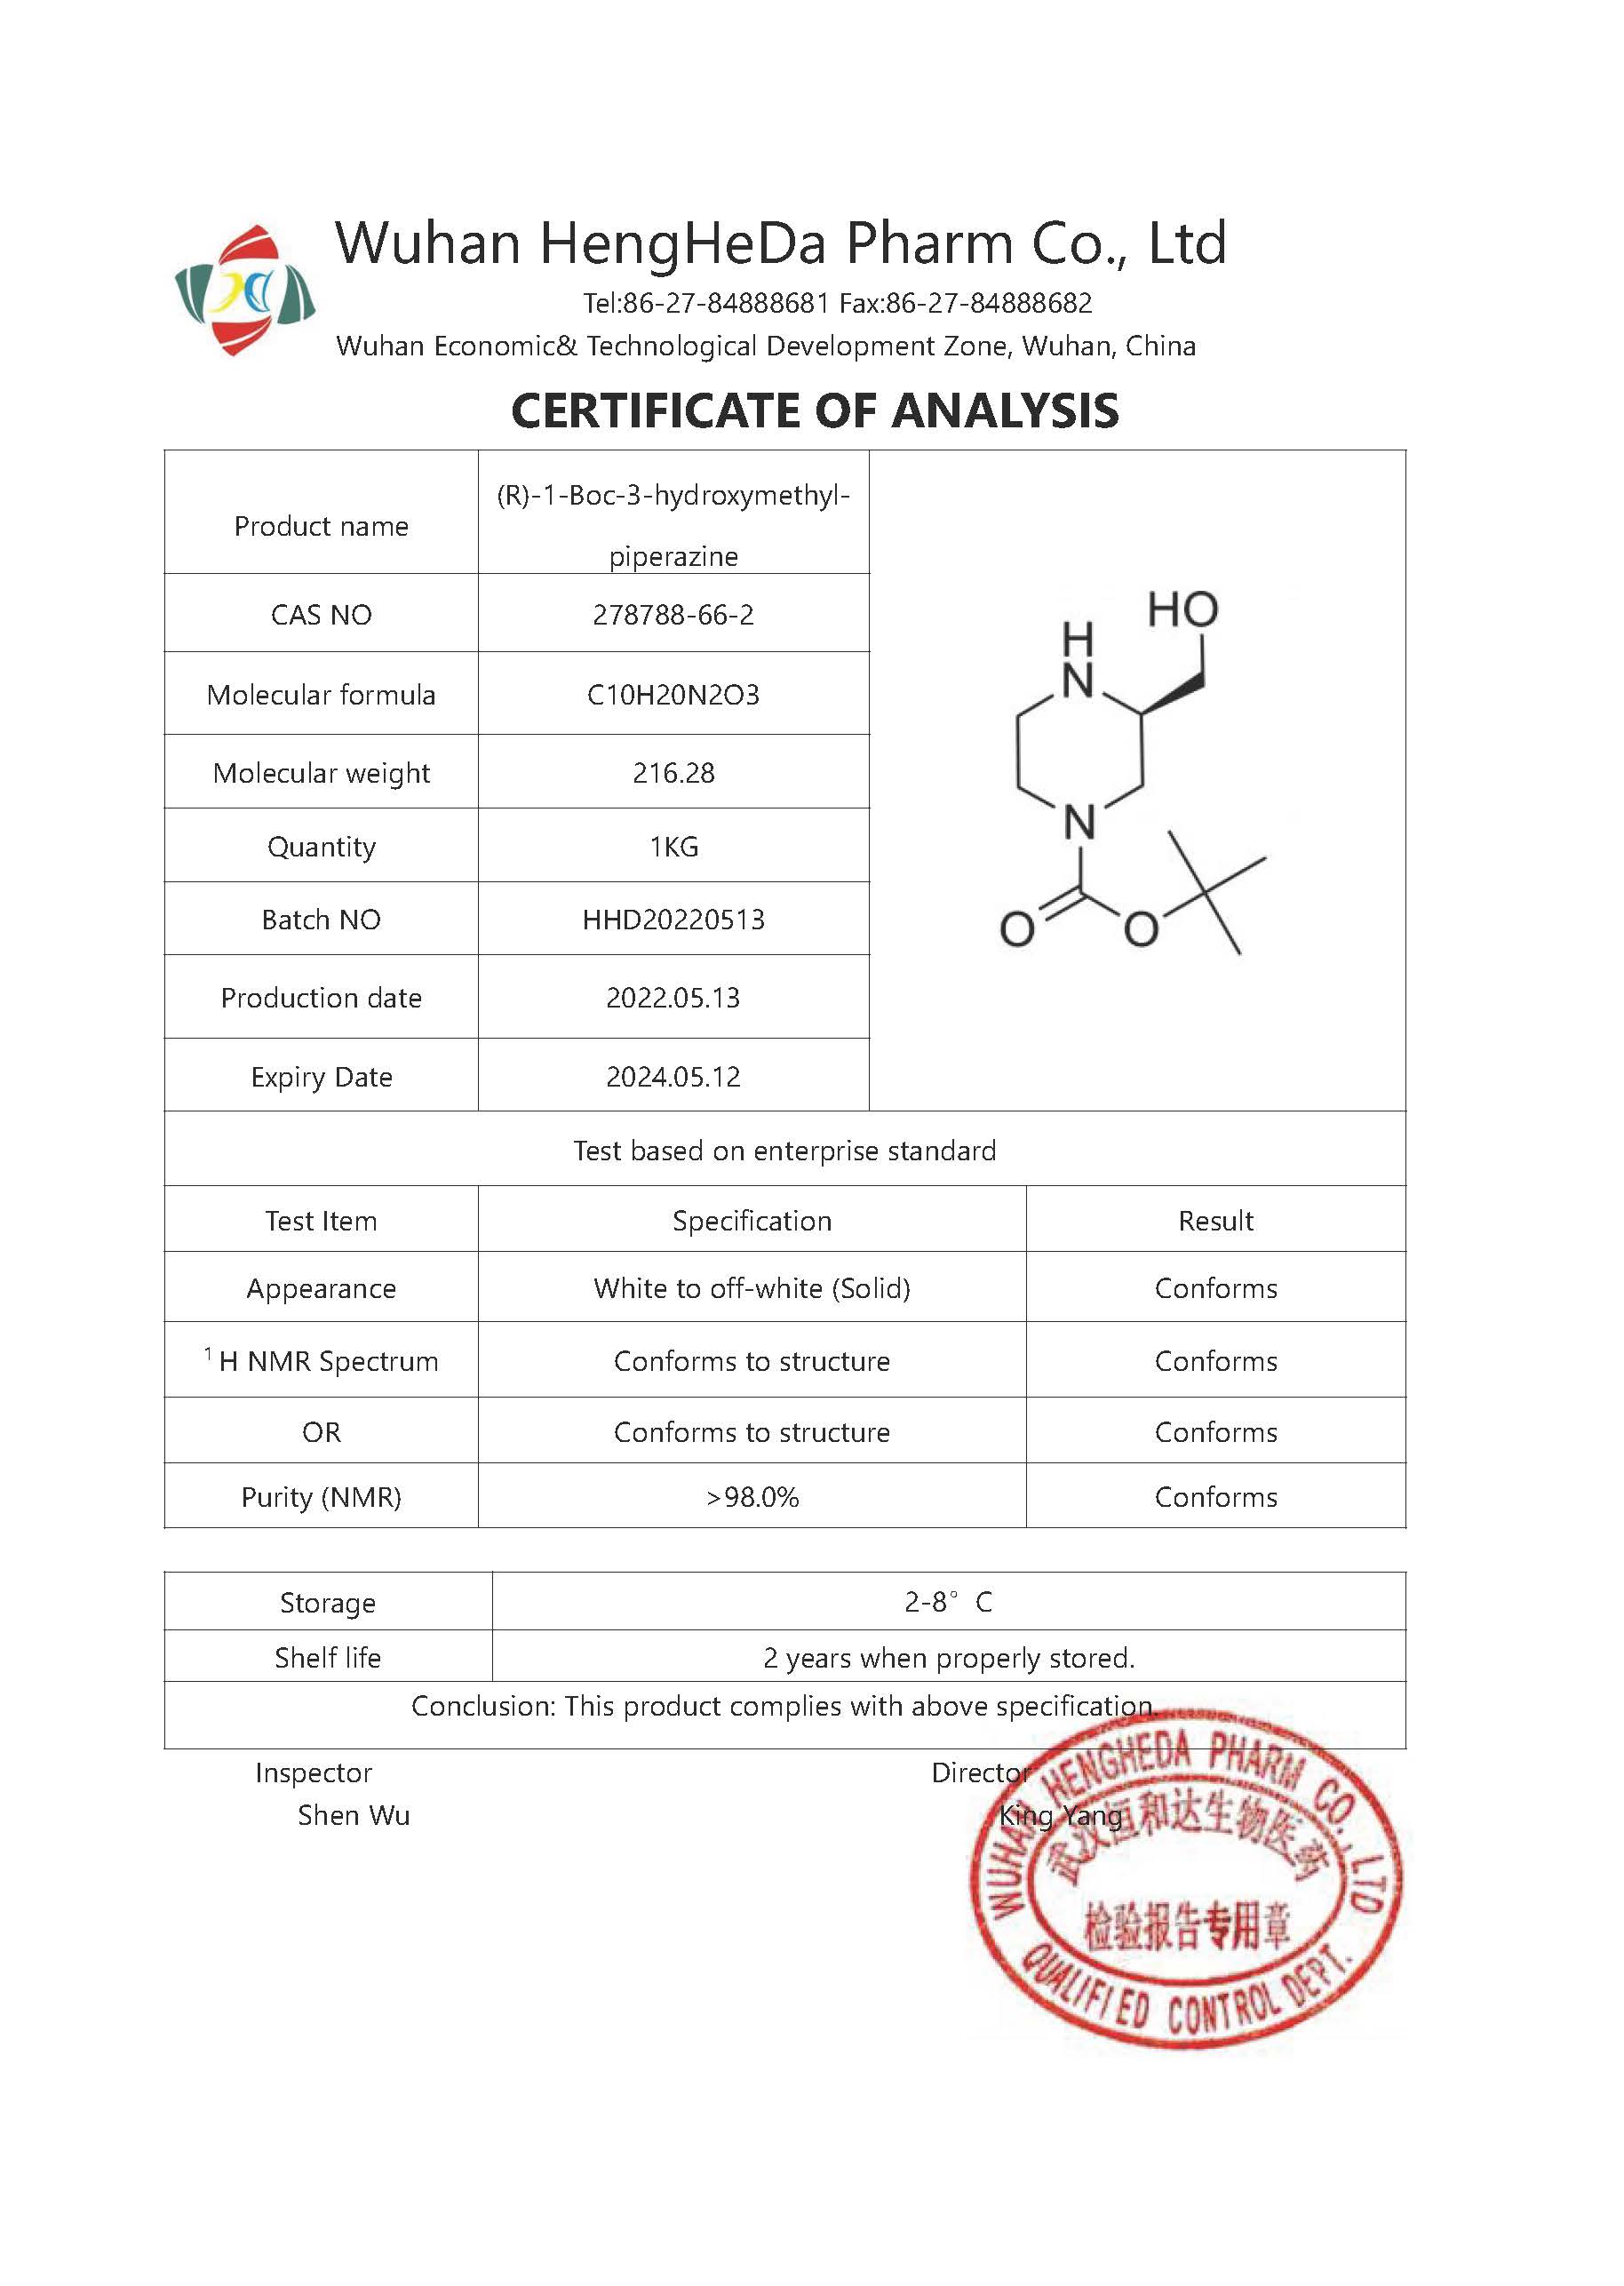 Comprar (R)-4-N-Boc-2-hidroximetil-piperazina CAS 278788-66-2, (R)-4-N-Boc-2-hidroximetil-piperazina CAS 278788-66-2 Precios, (R)-4-N-Boc-2-hidroximetil-piperazina CAS 278788-66-2 Marcas, (R)-4-N-Boc-2-hidroximetil-piperazina CAS 278788-66-2 Fabricante, (R)-4-N-Boc-2-hidroximetil-piperazina CAS 278788-66-2 Citas, (R)-4-N-Boc-2-hidroximetil-piperazina CAS 278788-66-2 Empresa.